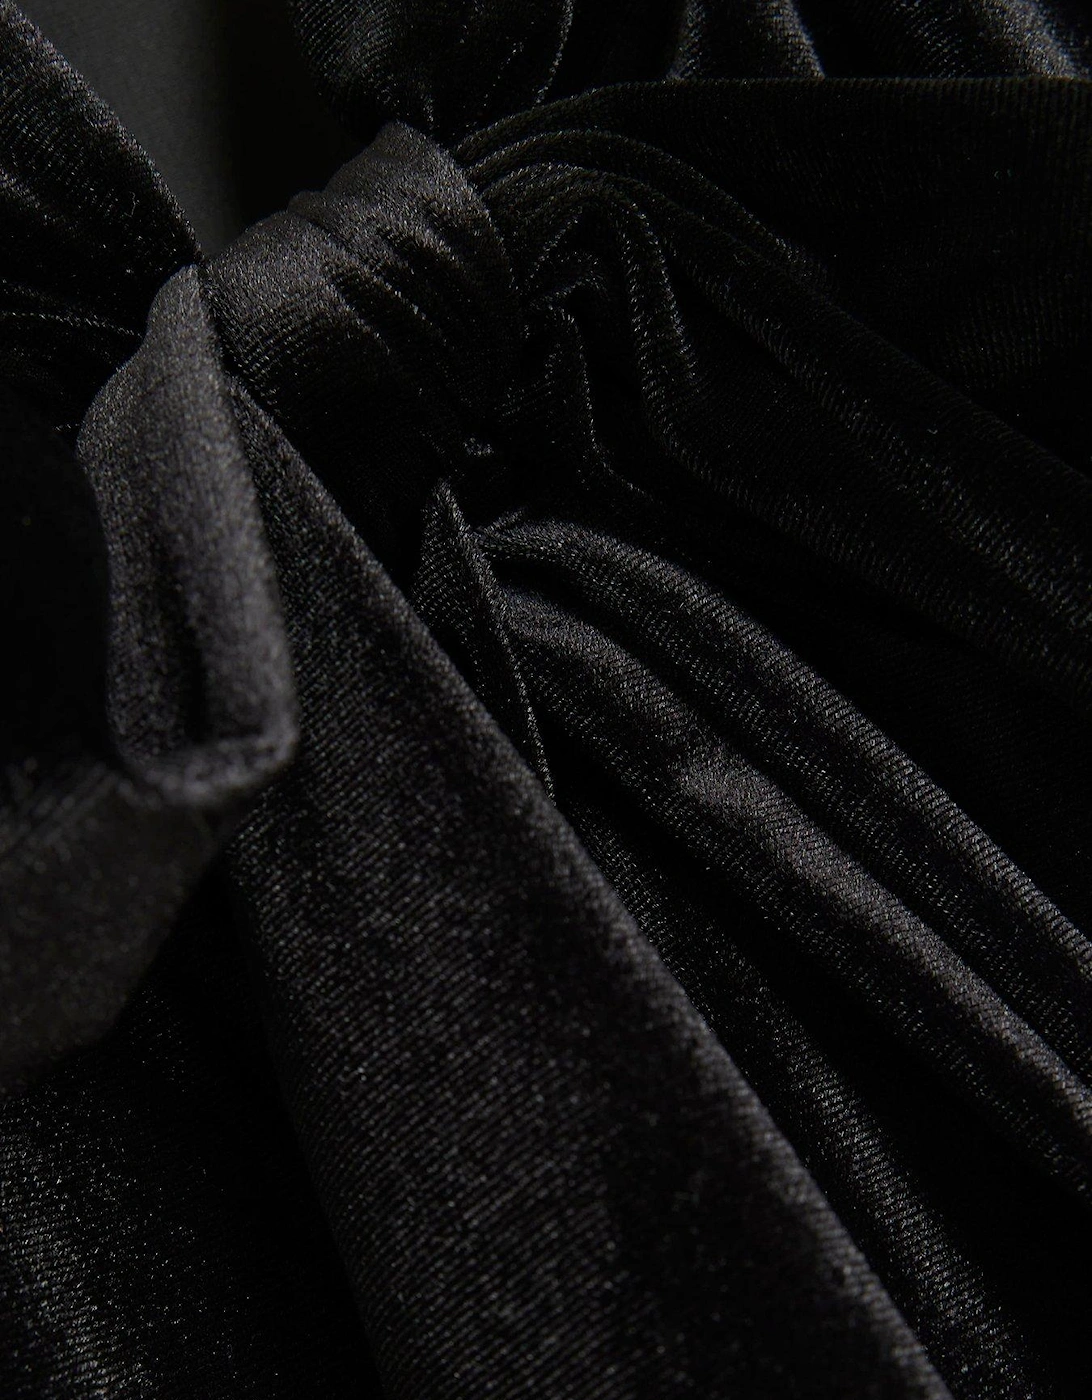 Velvet Fringe Mini Dress - Black